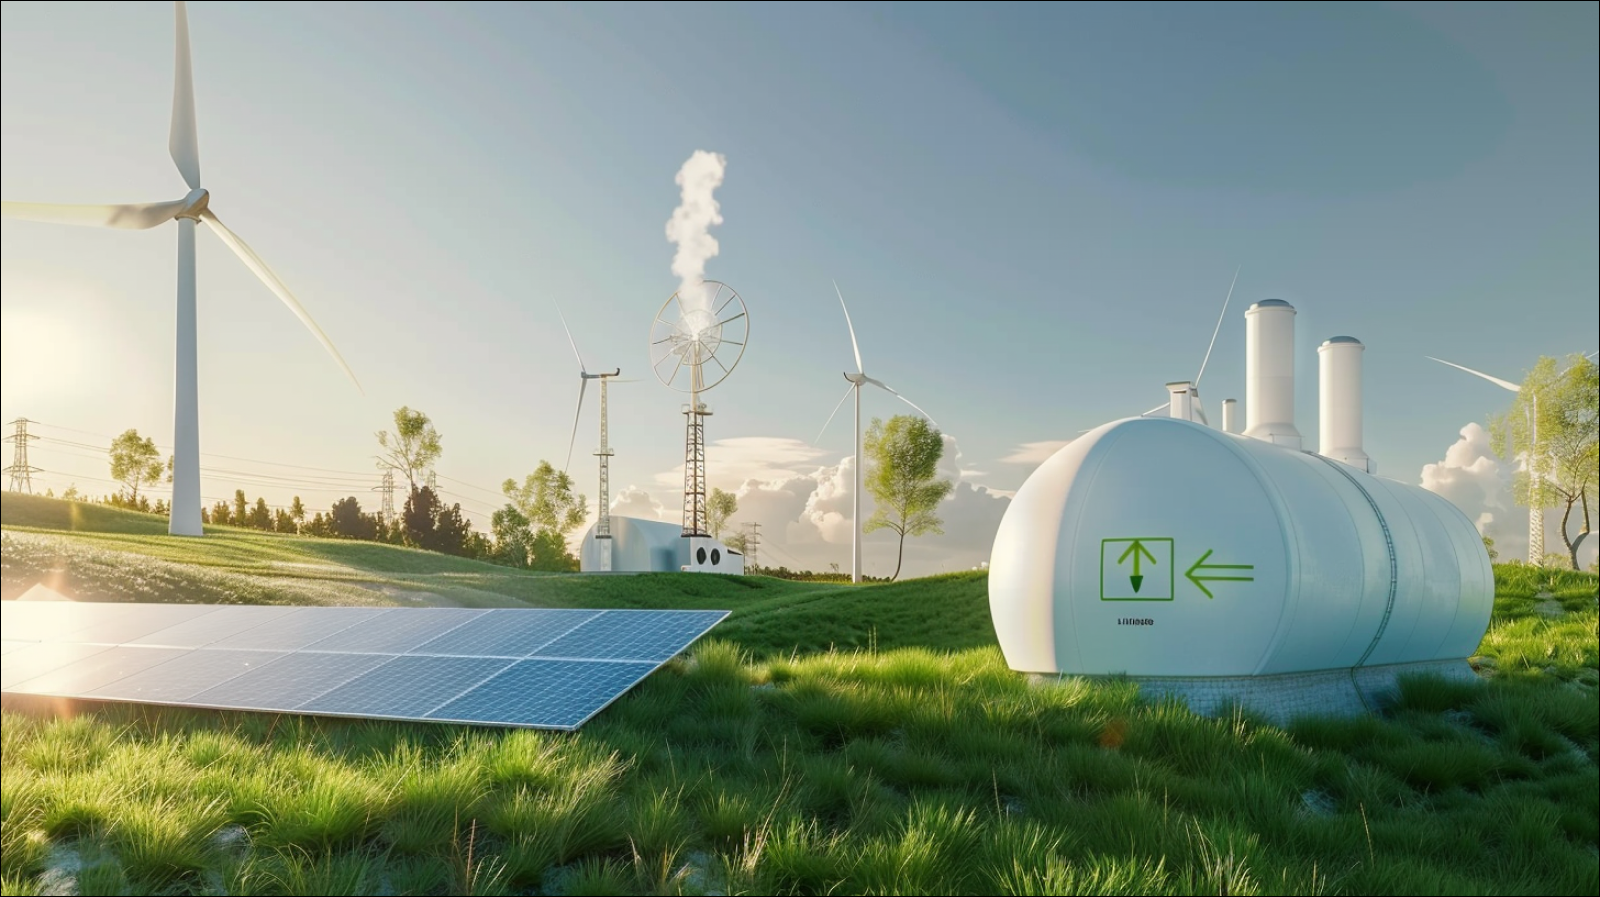 Wasserstoff-Brennstoffanlage, integriert mit Sonnenkollektoren und Windturbinen auf einem  grünen Feld unter einem klaren blauen Himmel